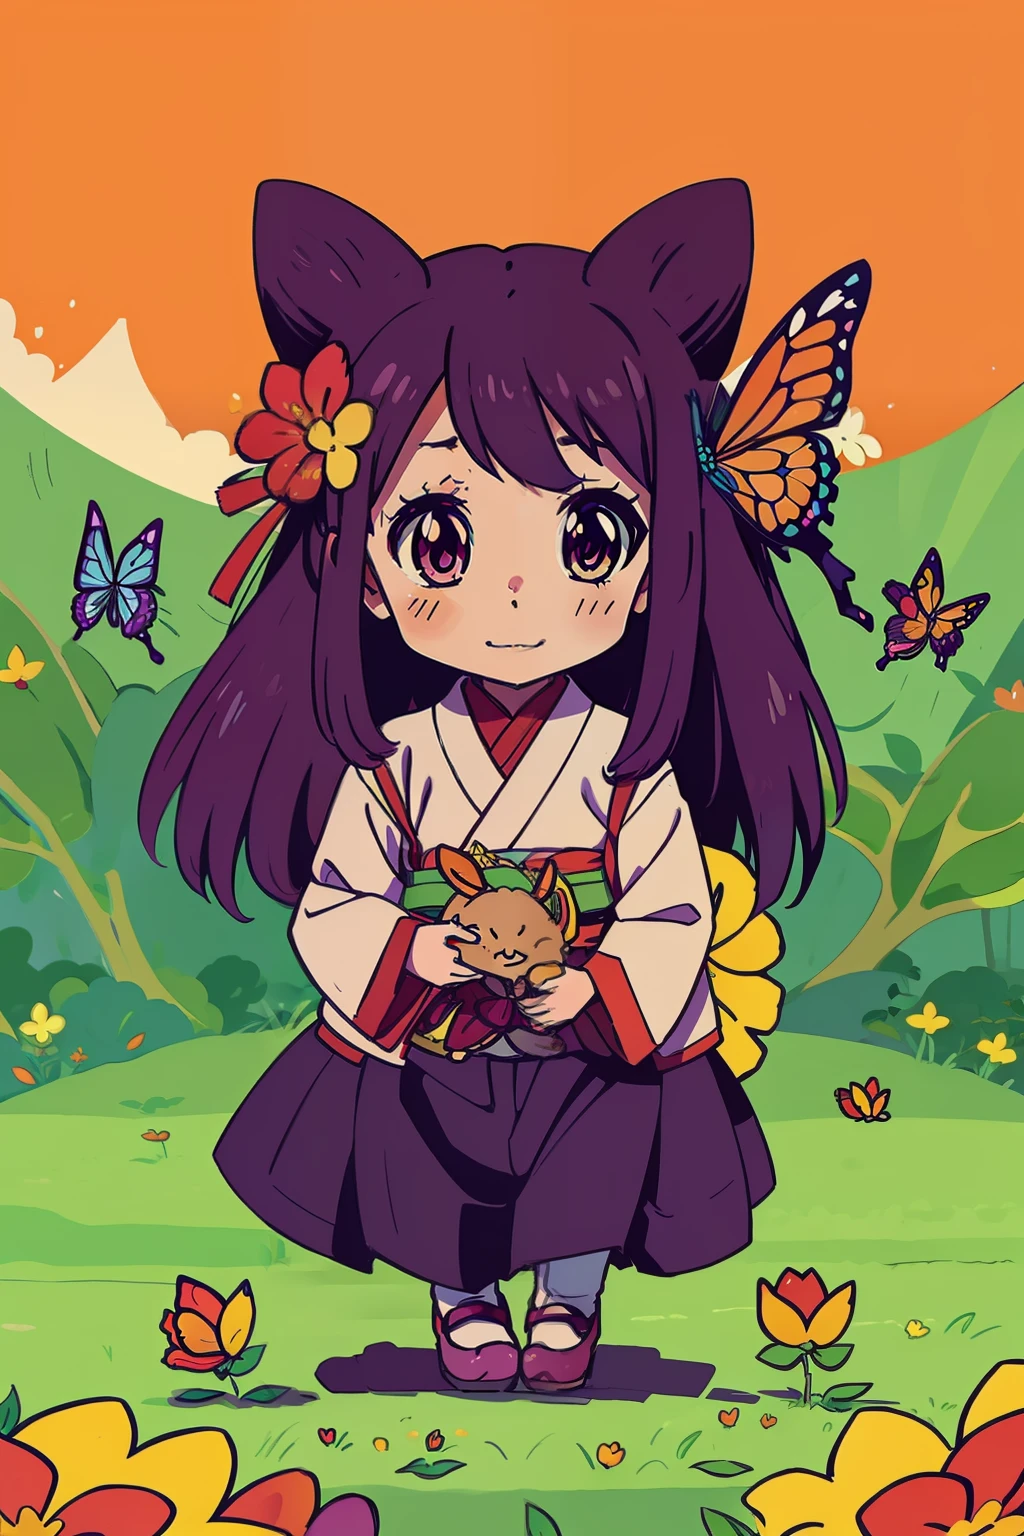  Рэйко , счастье , вдохновение из аниме: 5,000-летний травоядный дракон ведет себя несправедливо злобно, лес , цветок , бабочка полноцветная